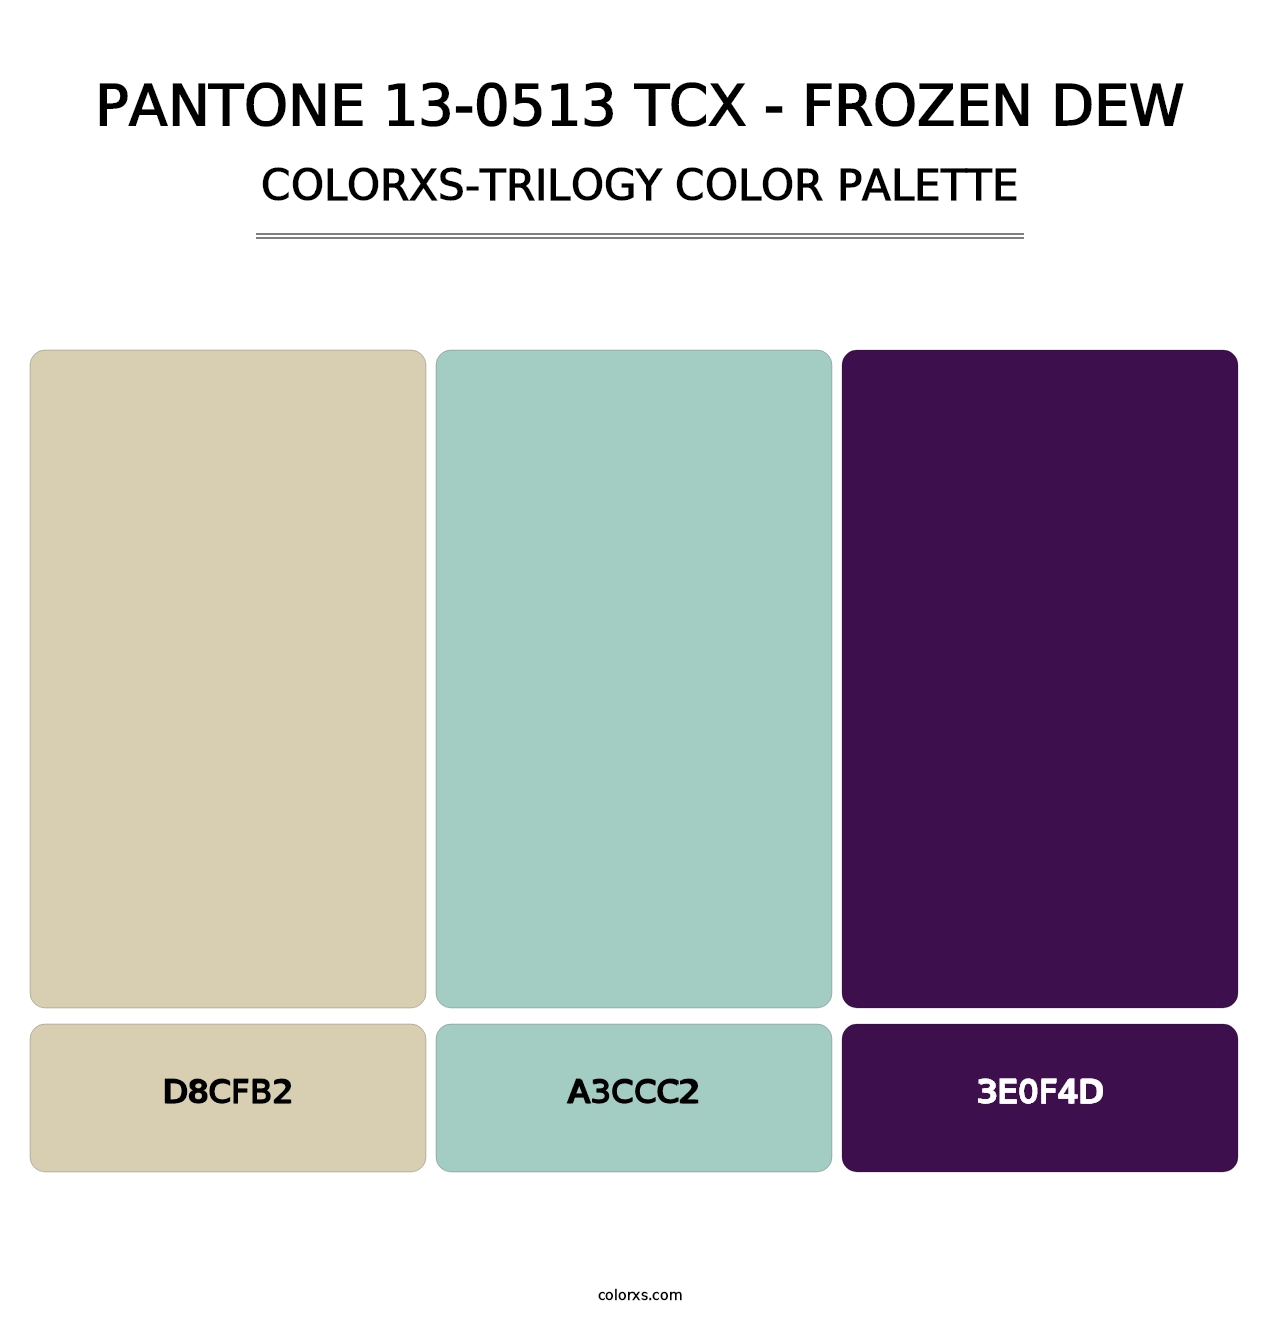 PANTONE 13-0513 TCX - Frozen Dew - Colorxs Trilogy Palette